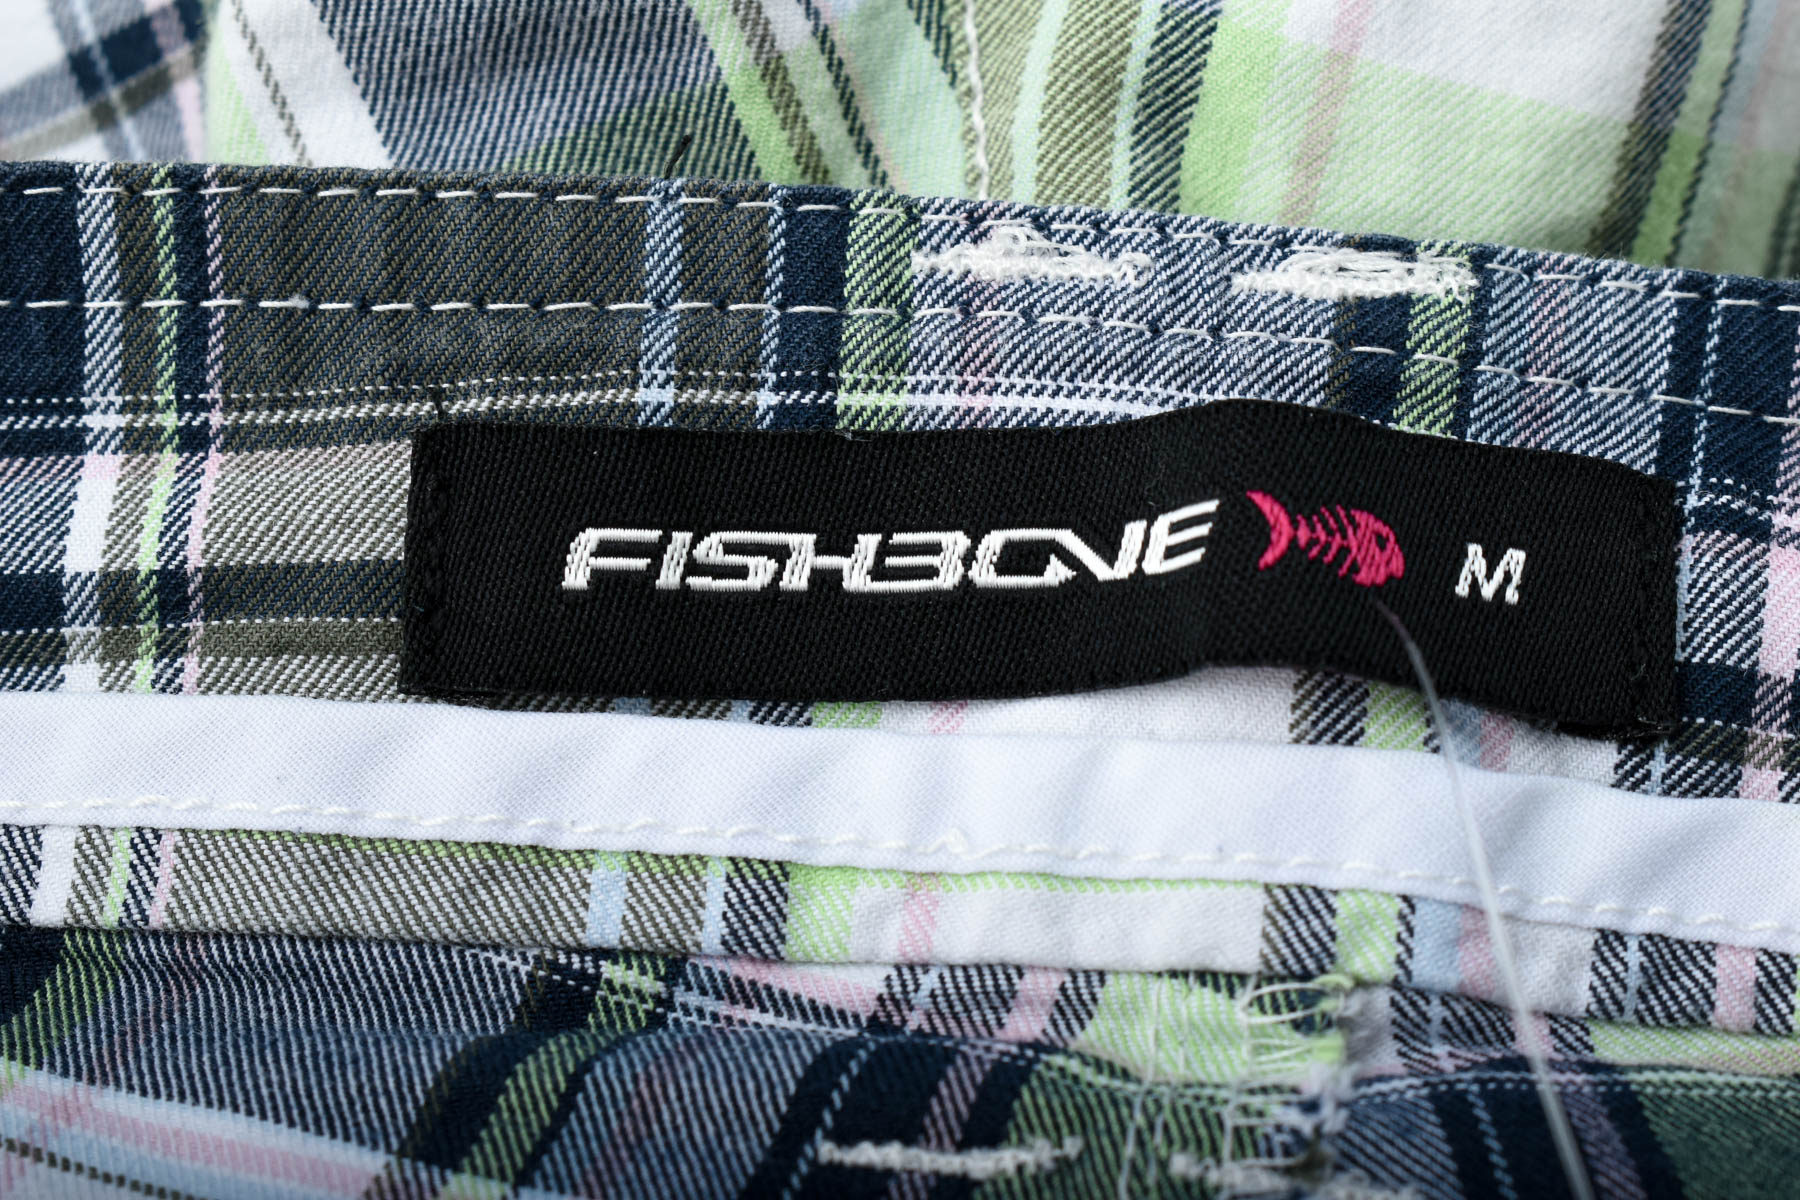 Female shorts - Fishbone - 2